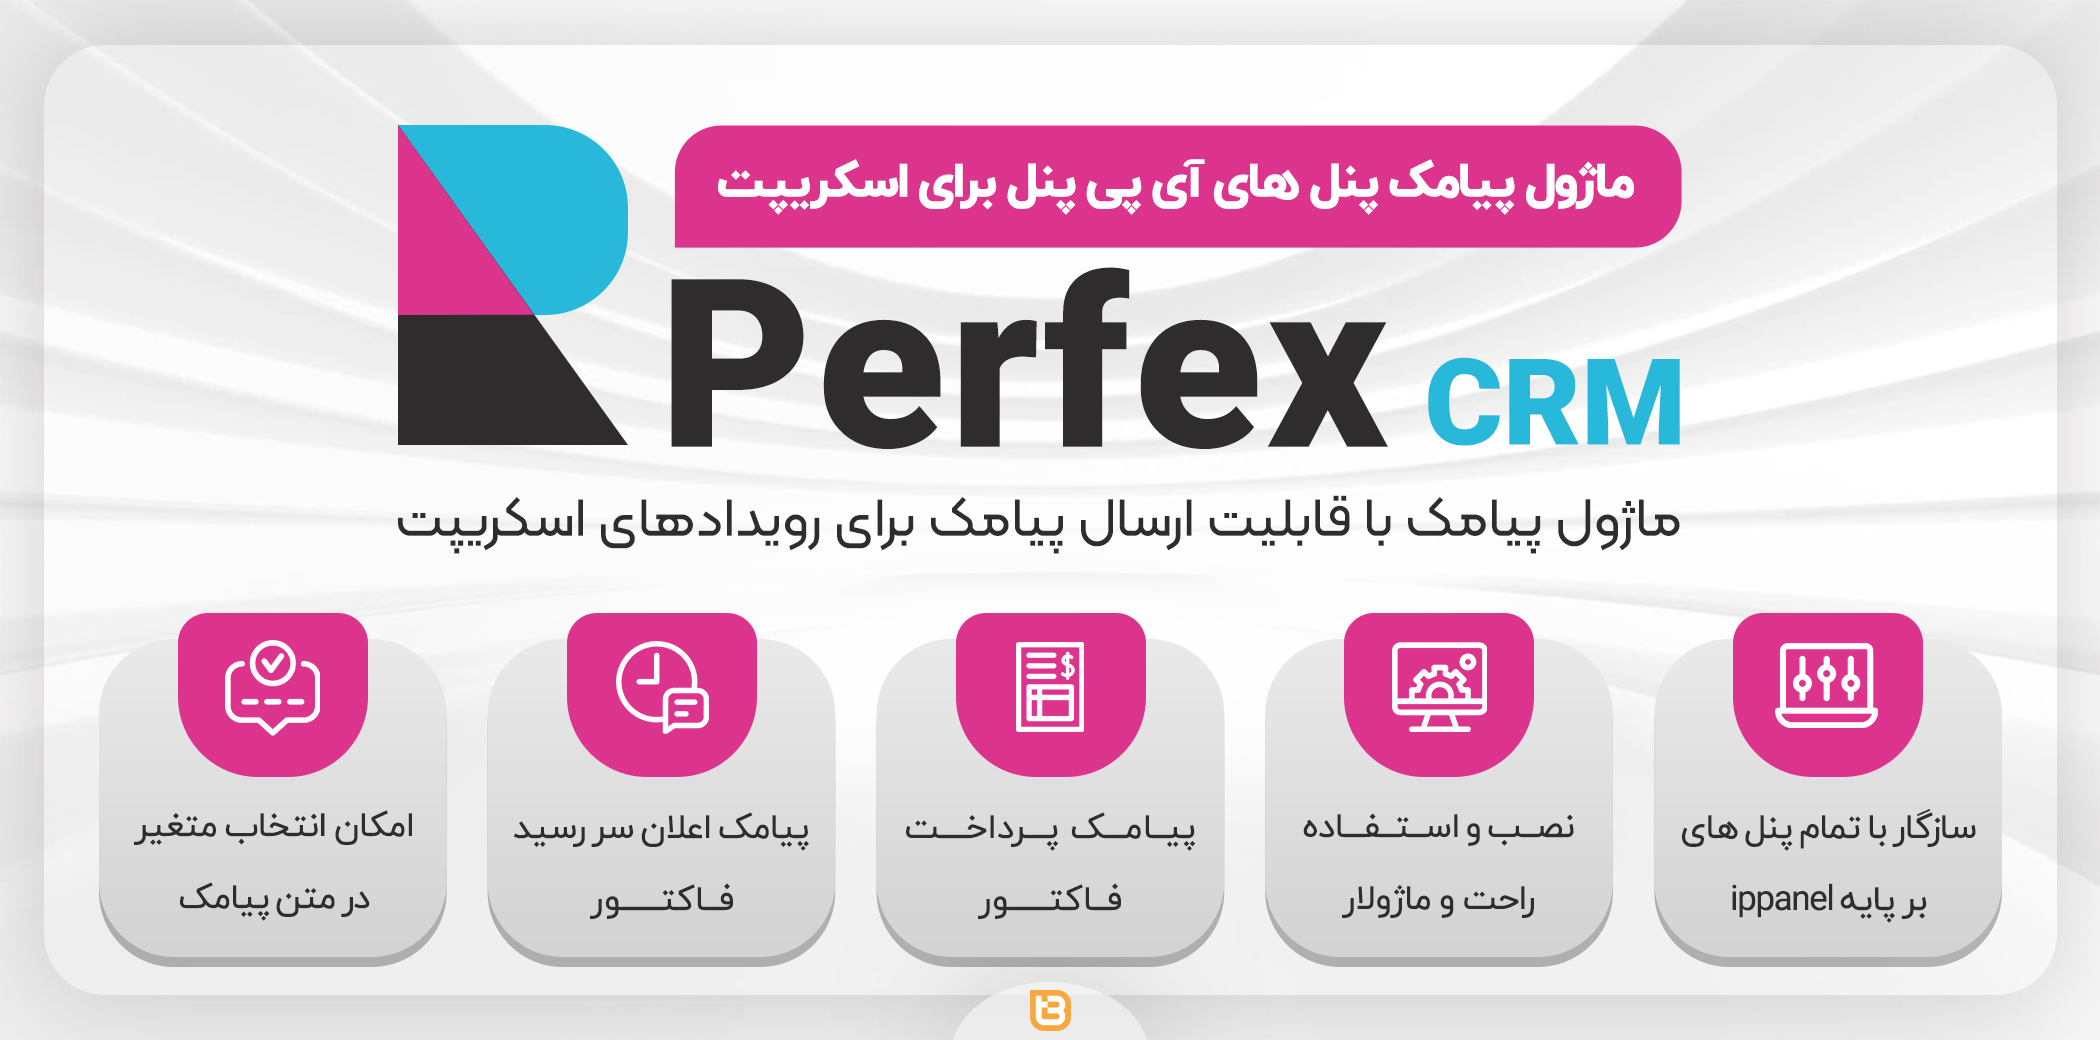 ماژول های پیامکی اسکریپت Perfex CRM